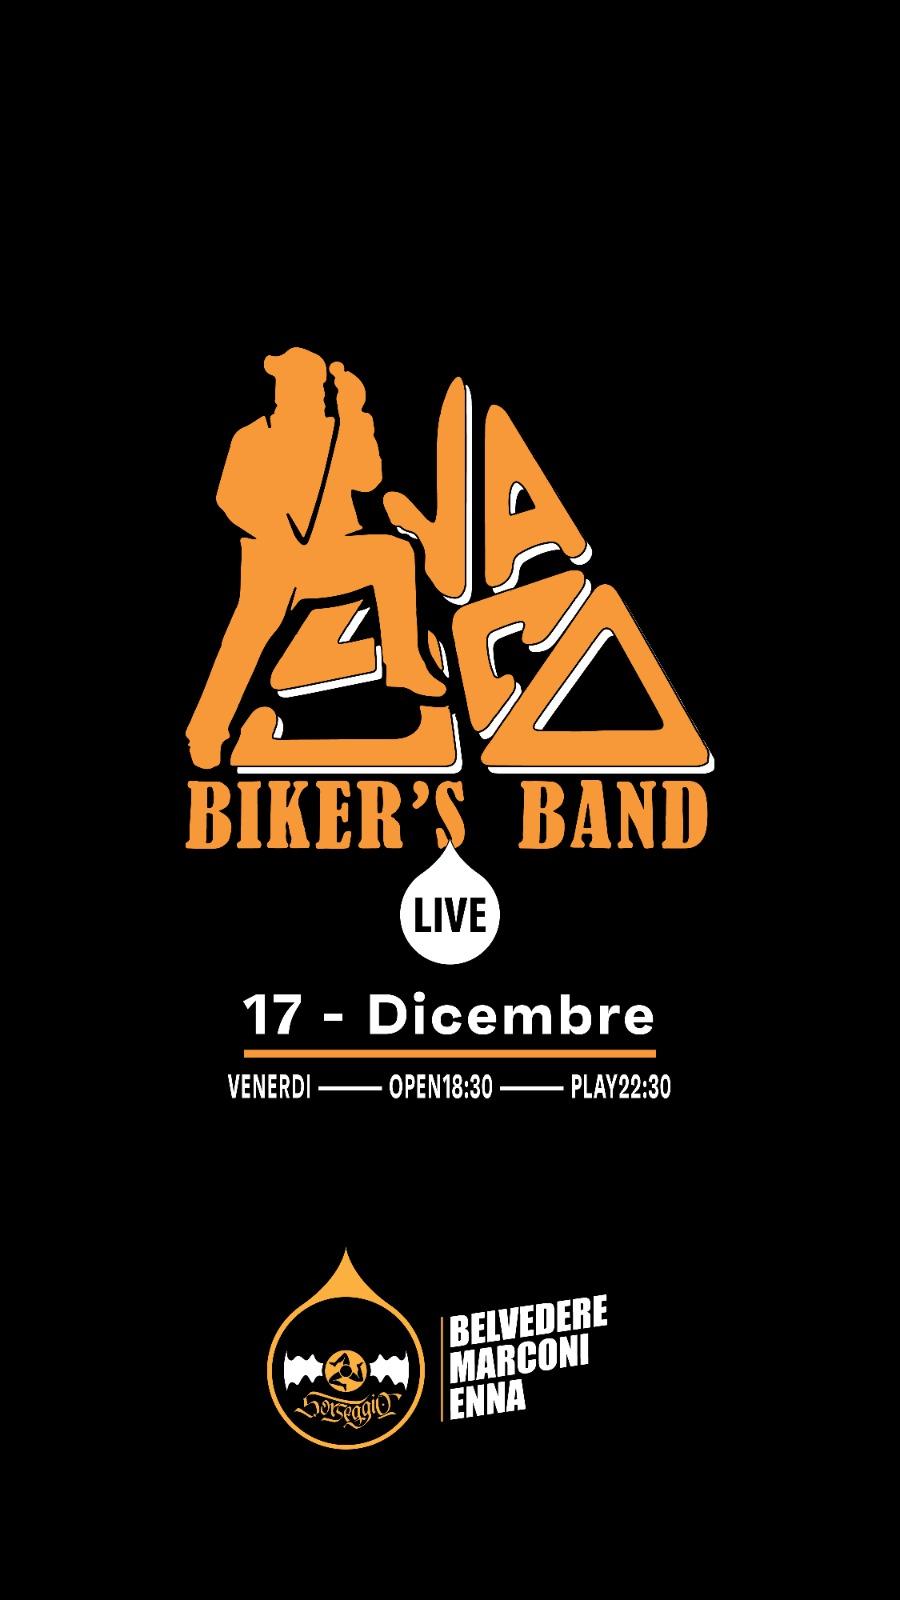 sorseggio-pub-enna-musica-live-bikers-band